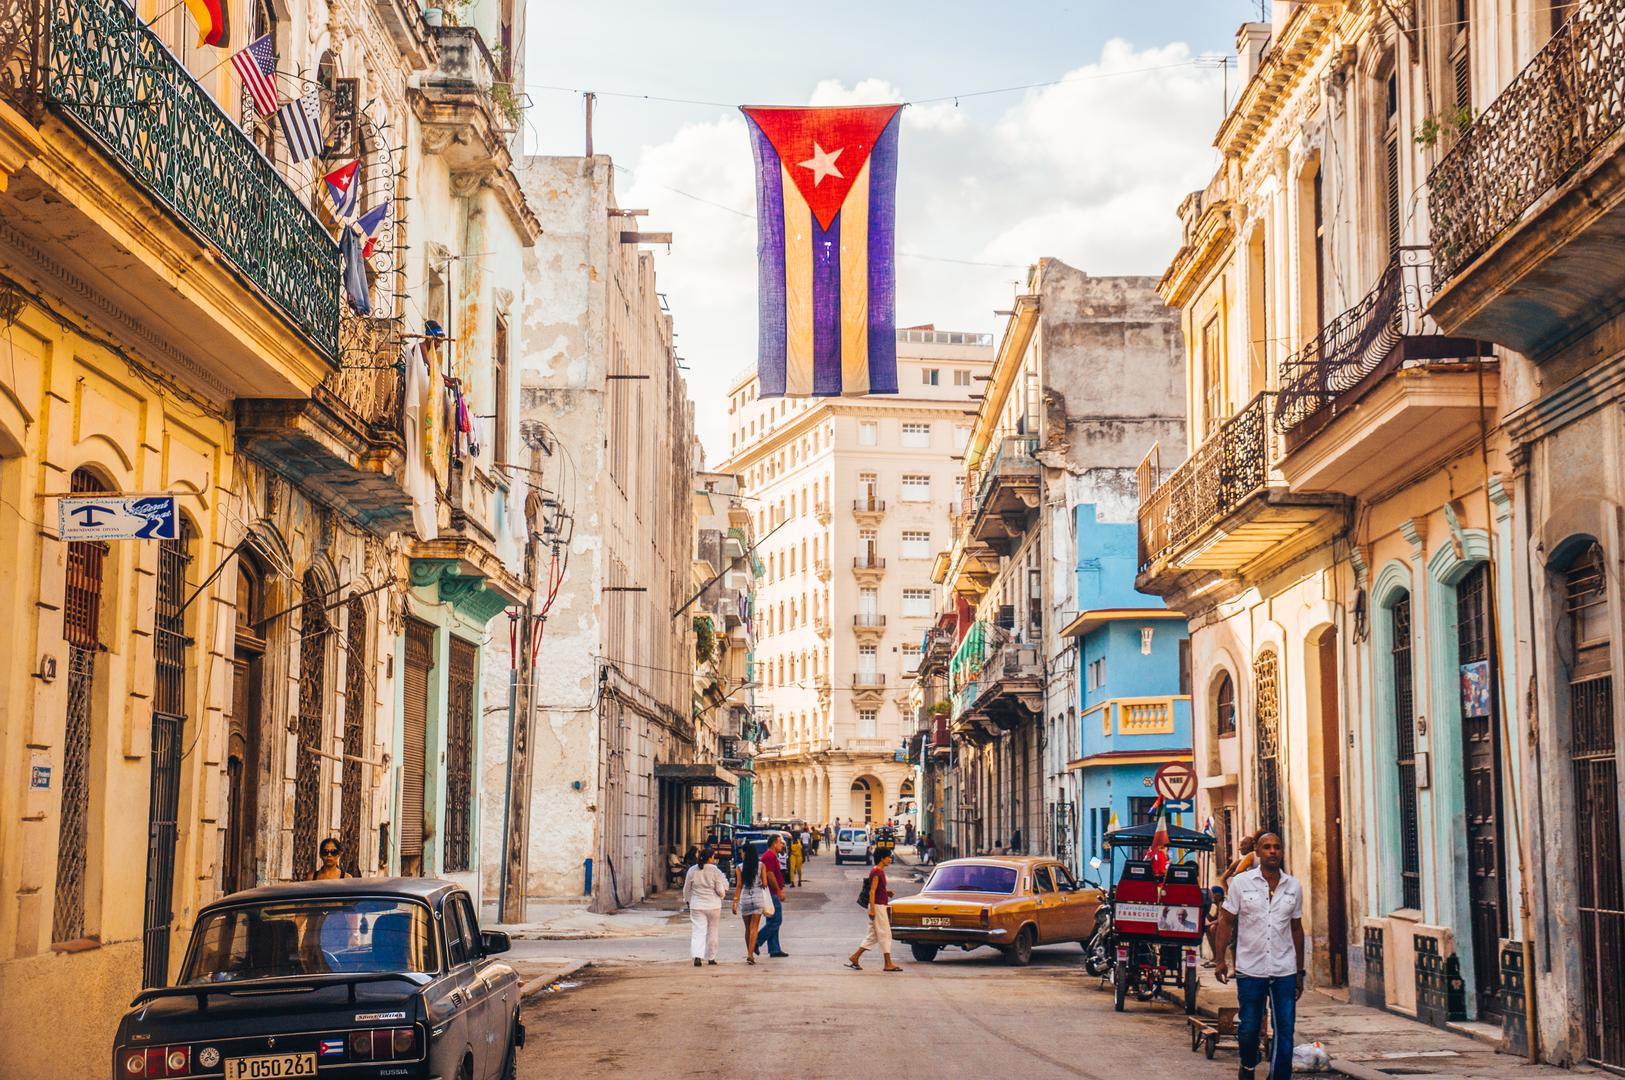 1. Kuba: Na Kubi se često čini kao da nema reda, ali postoji. Zove se ‘el ultimo’. Kada stignete negdje pitate ‘el ultimo?’, a tko je zadnji u redu diže ruku. Sada ste ‘el ultimo’ i jednostavno znate tko je ispred vas.